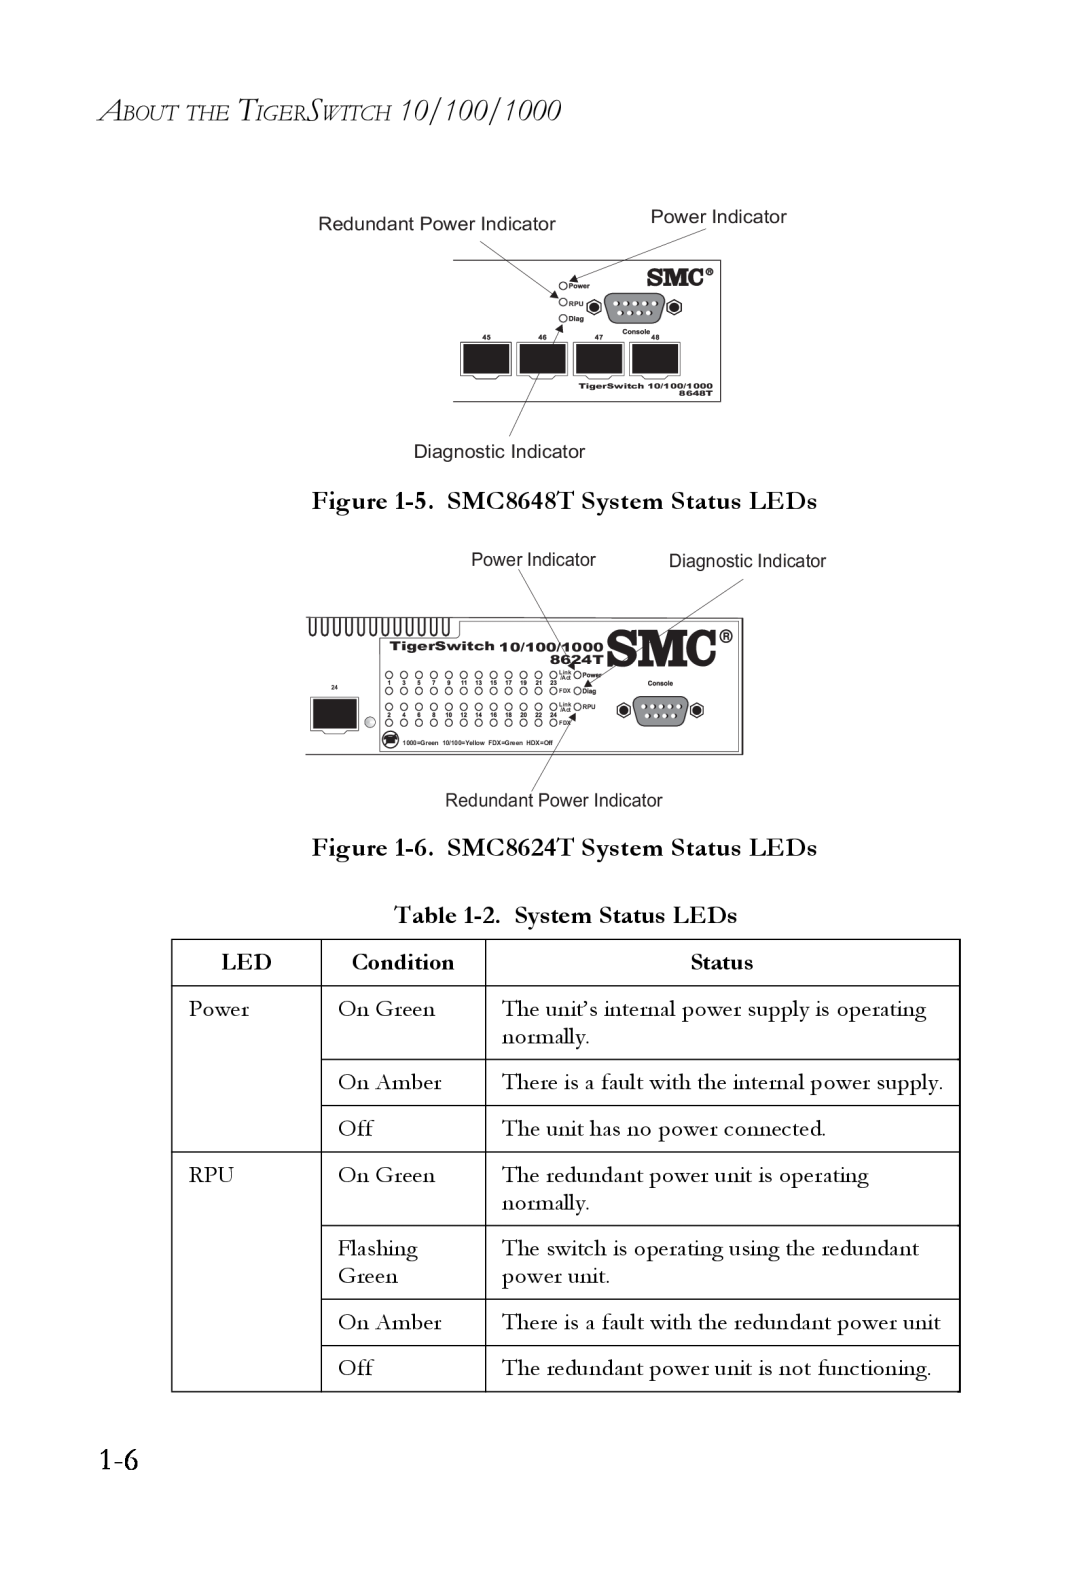 SMC Networks manual 5. SMC8648T System Status LEDs, 6. SMC8624T System Status LEDs, 2. System Status LEDs 